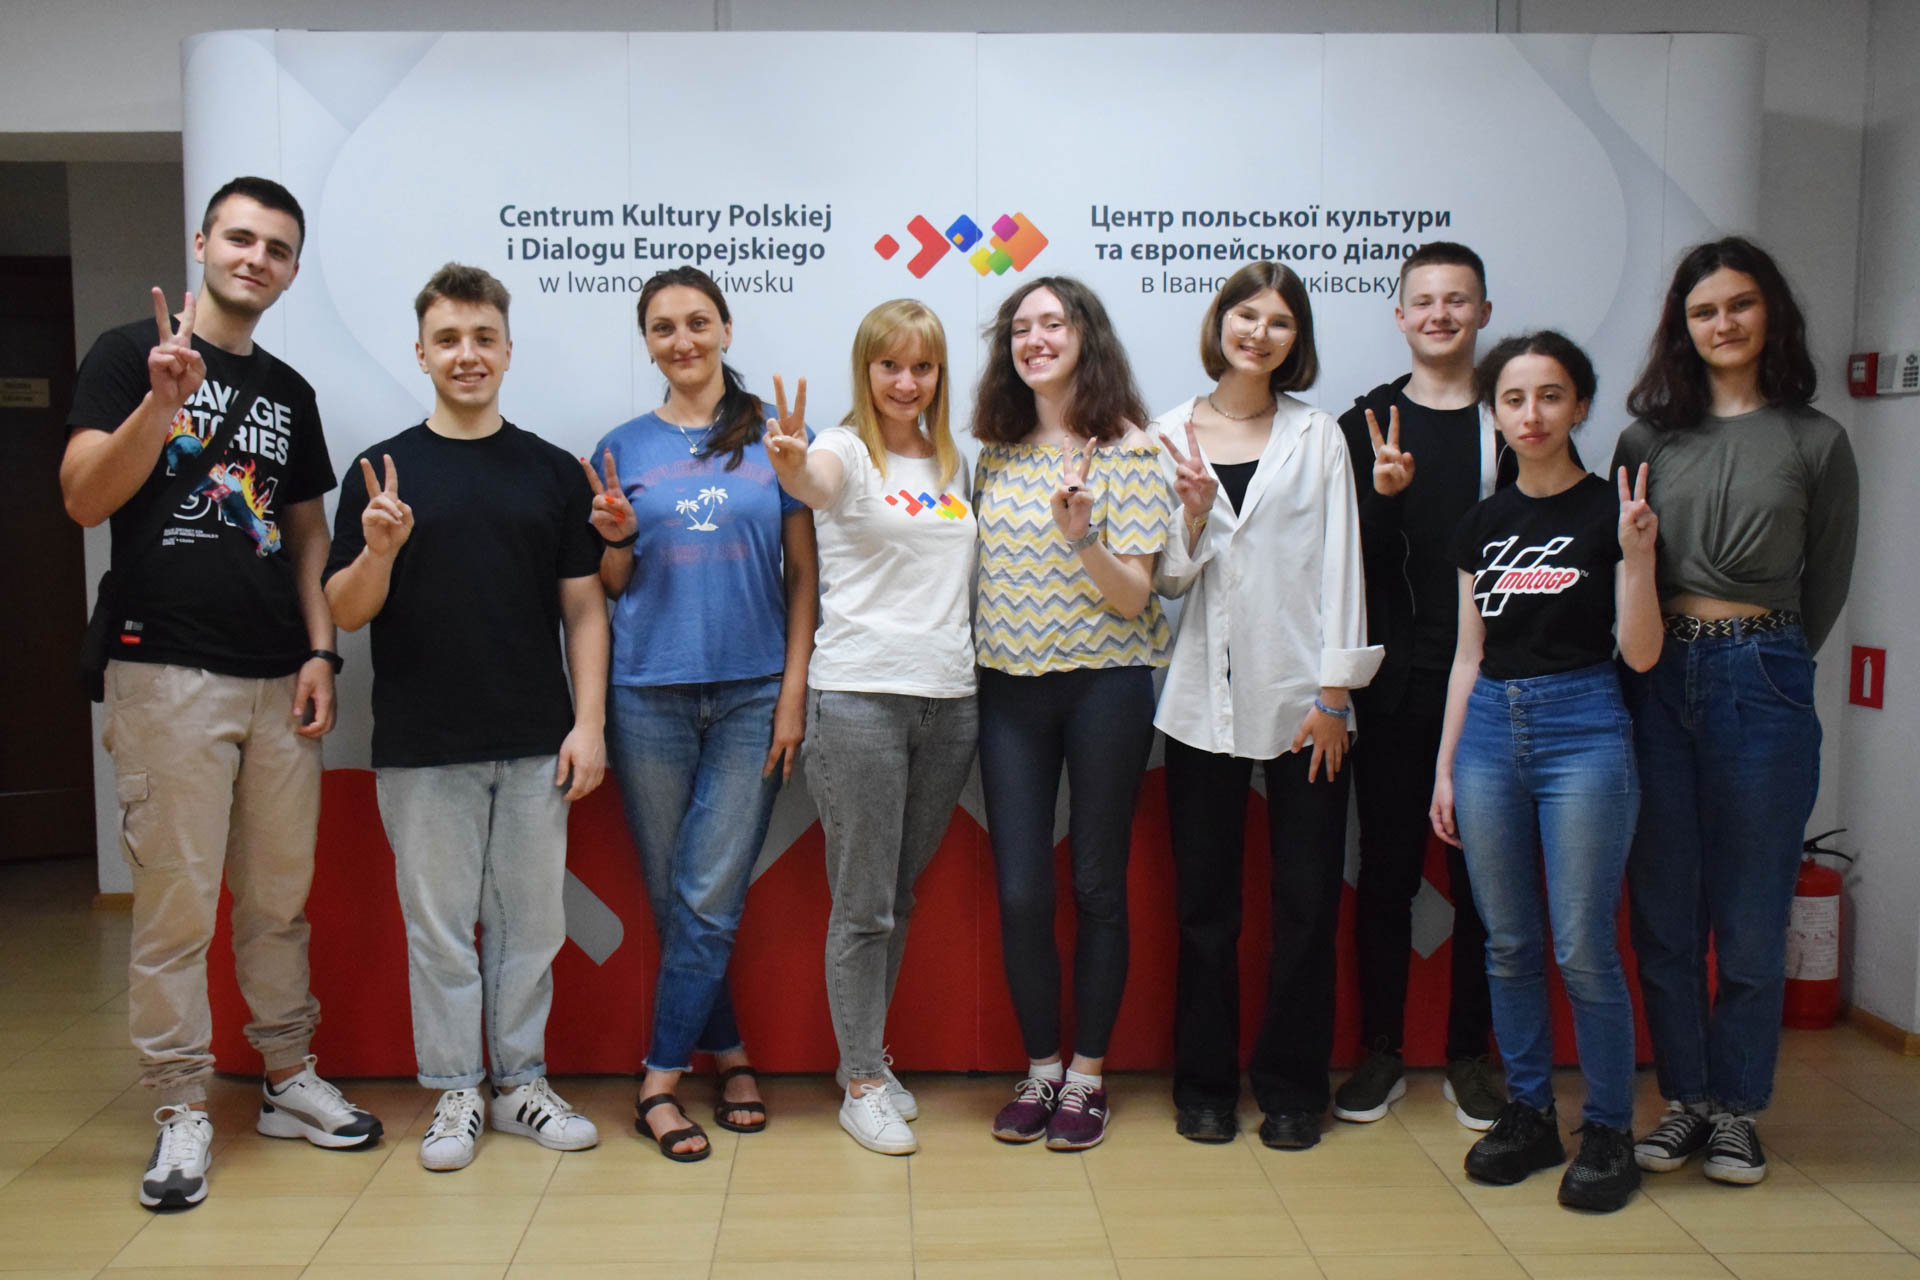 Spotkanie wolontariuszy Centrum Kultury Polskiej i Dialogu Europejskiego